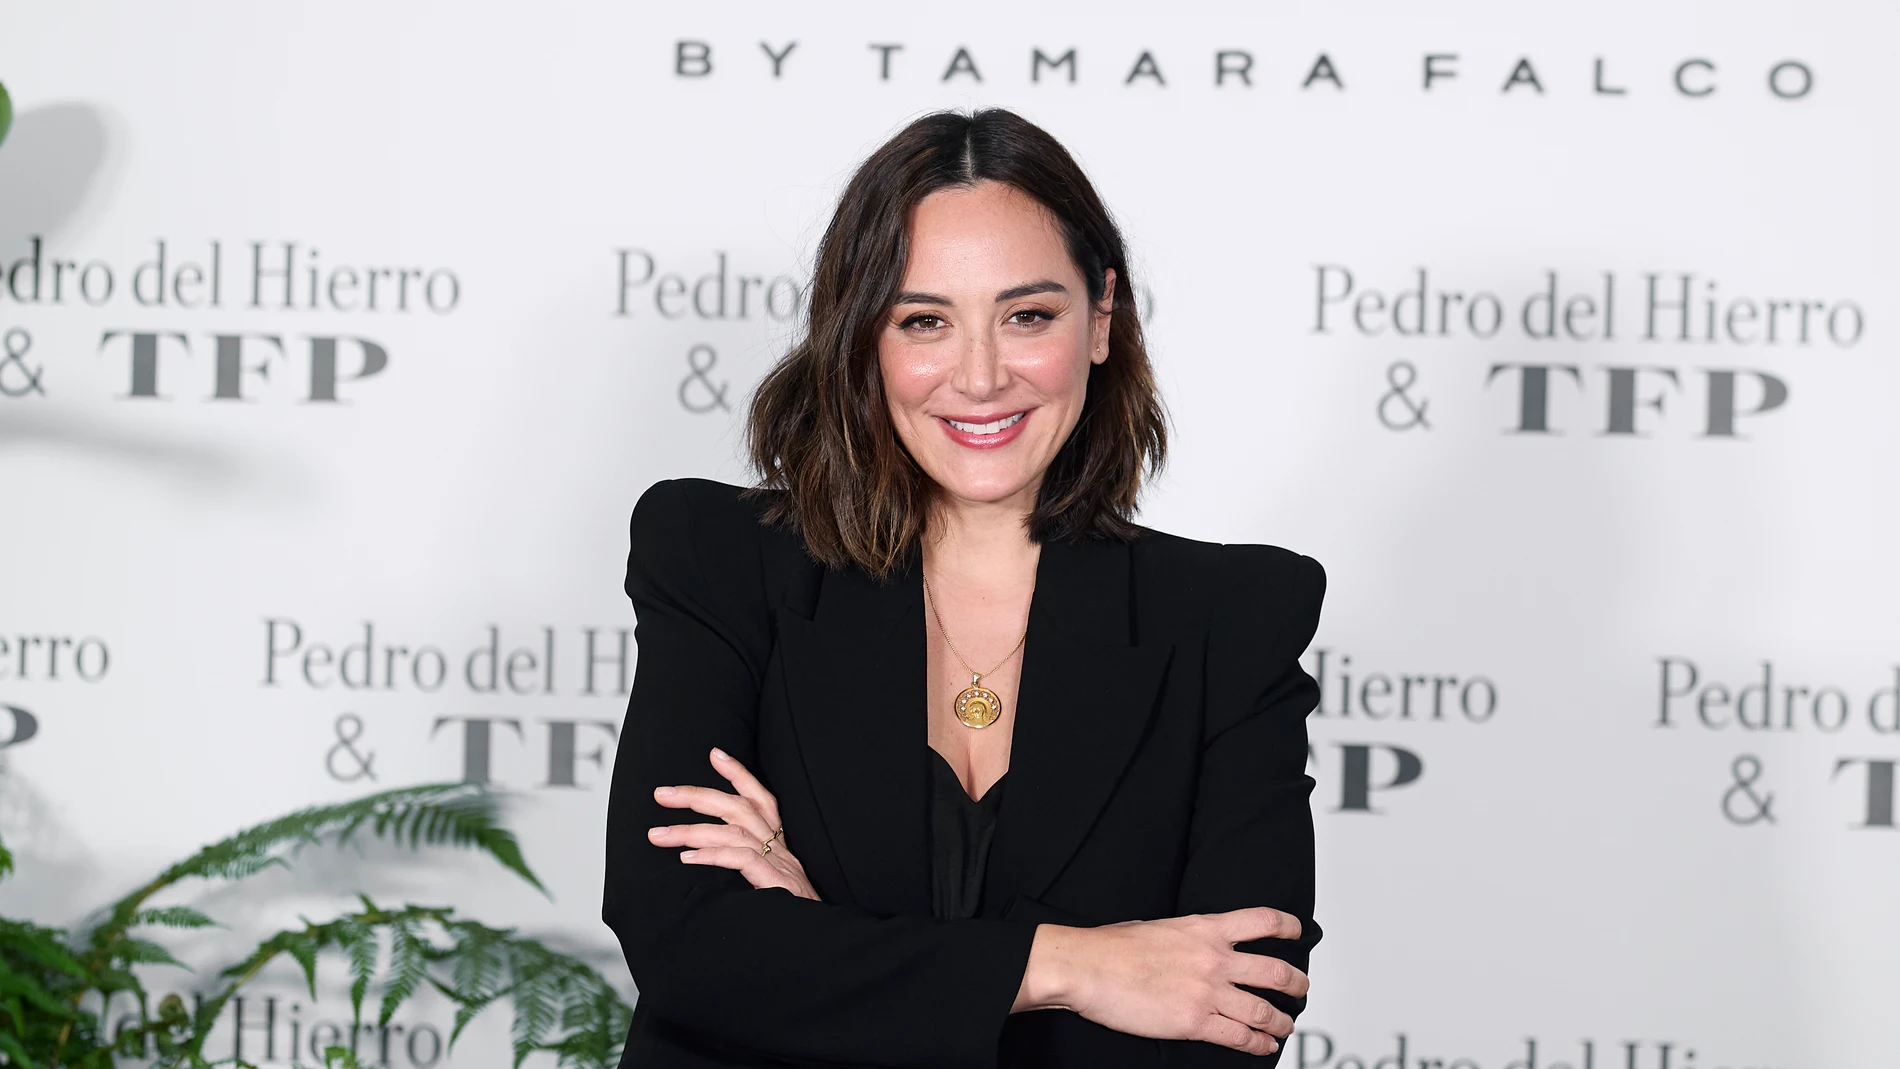 Tamara Falcó durante la presentación de la nueva colección de su firma de ropa TFP, en 2022.